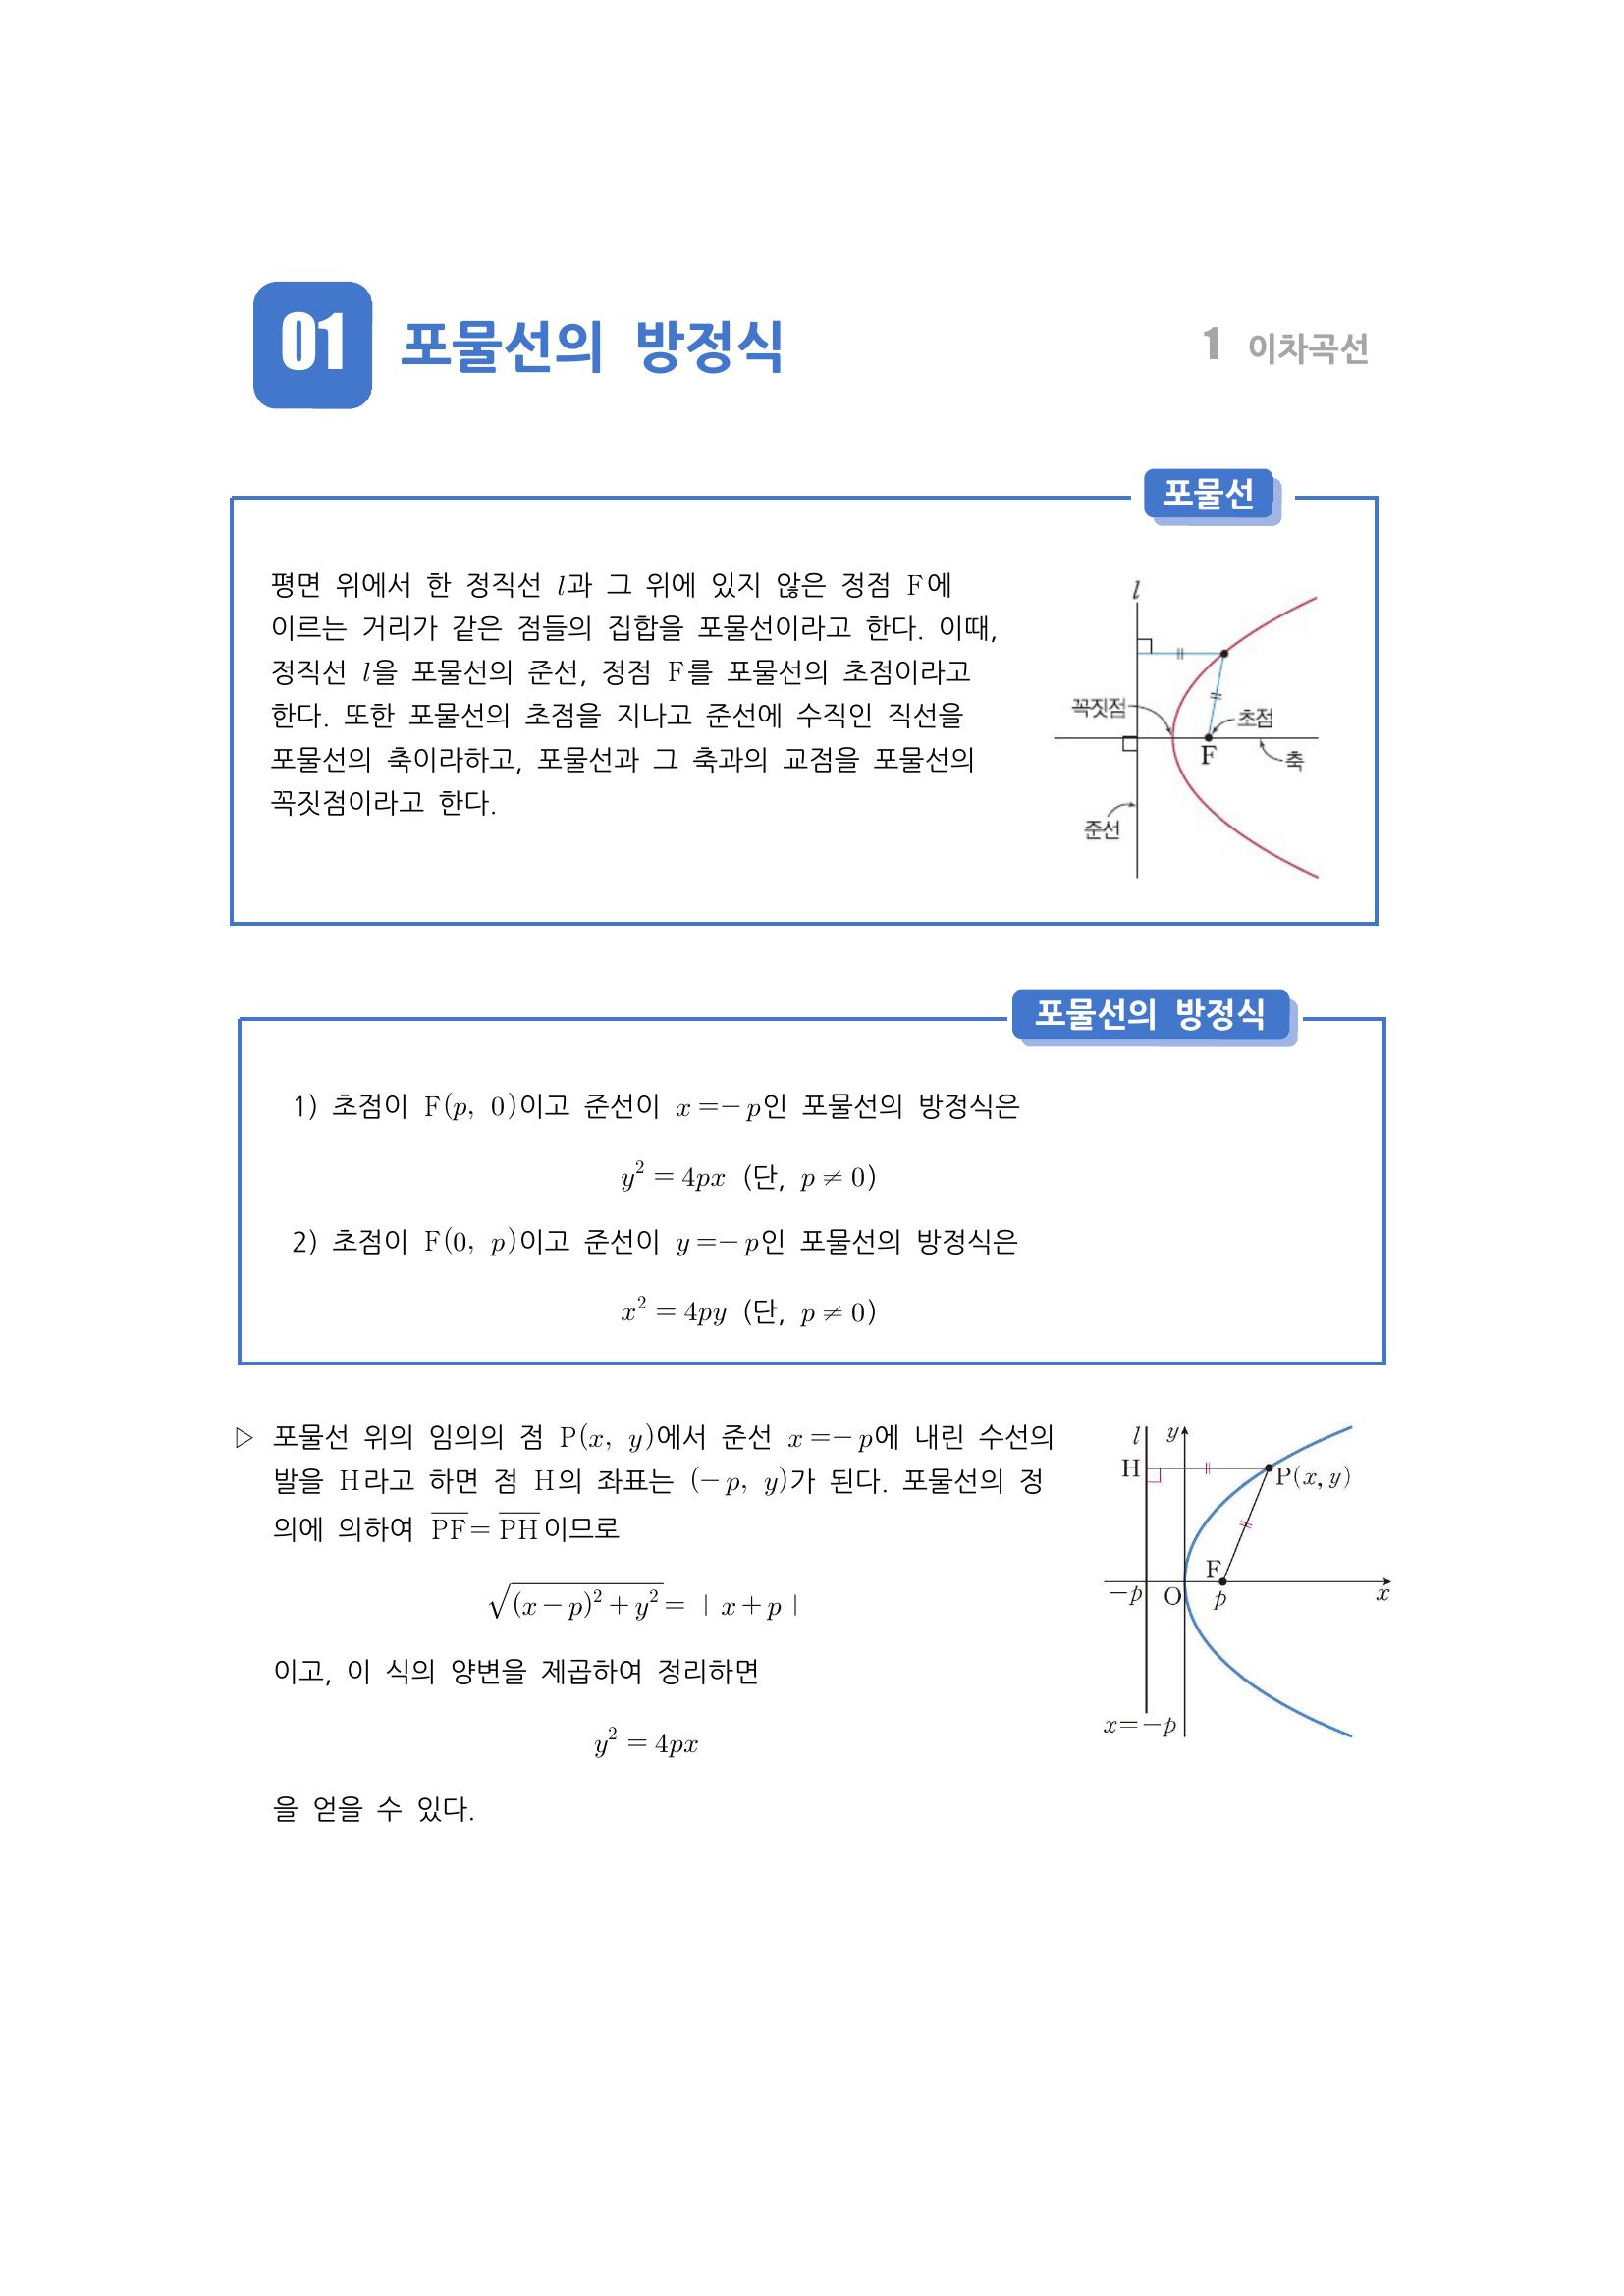 수학 개념 정리/공식 : 포물선의 방정식, 포물선의 평행이동